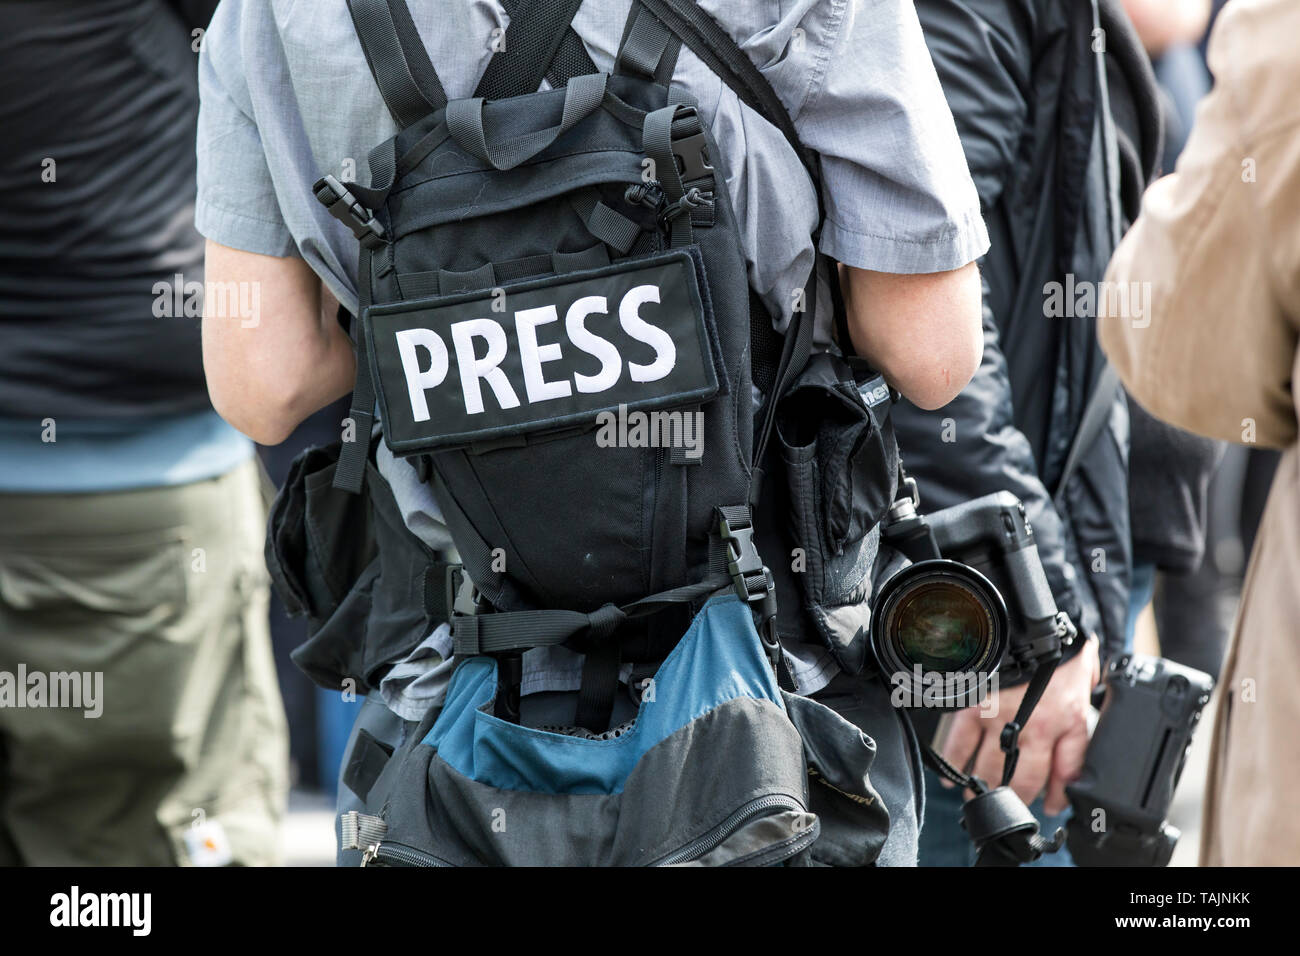 Periodista, fotógrafo, reportero, en una manifestación, inscripción PRENSA, mochila, cámara Foto de stock